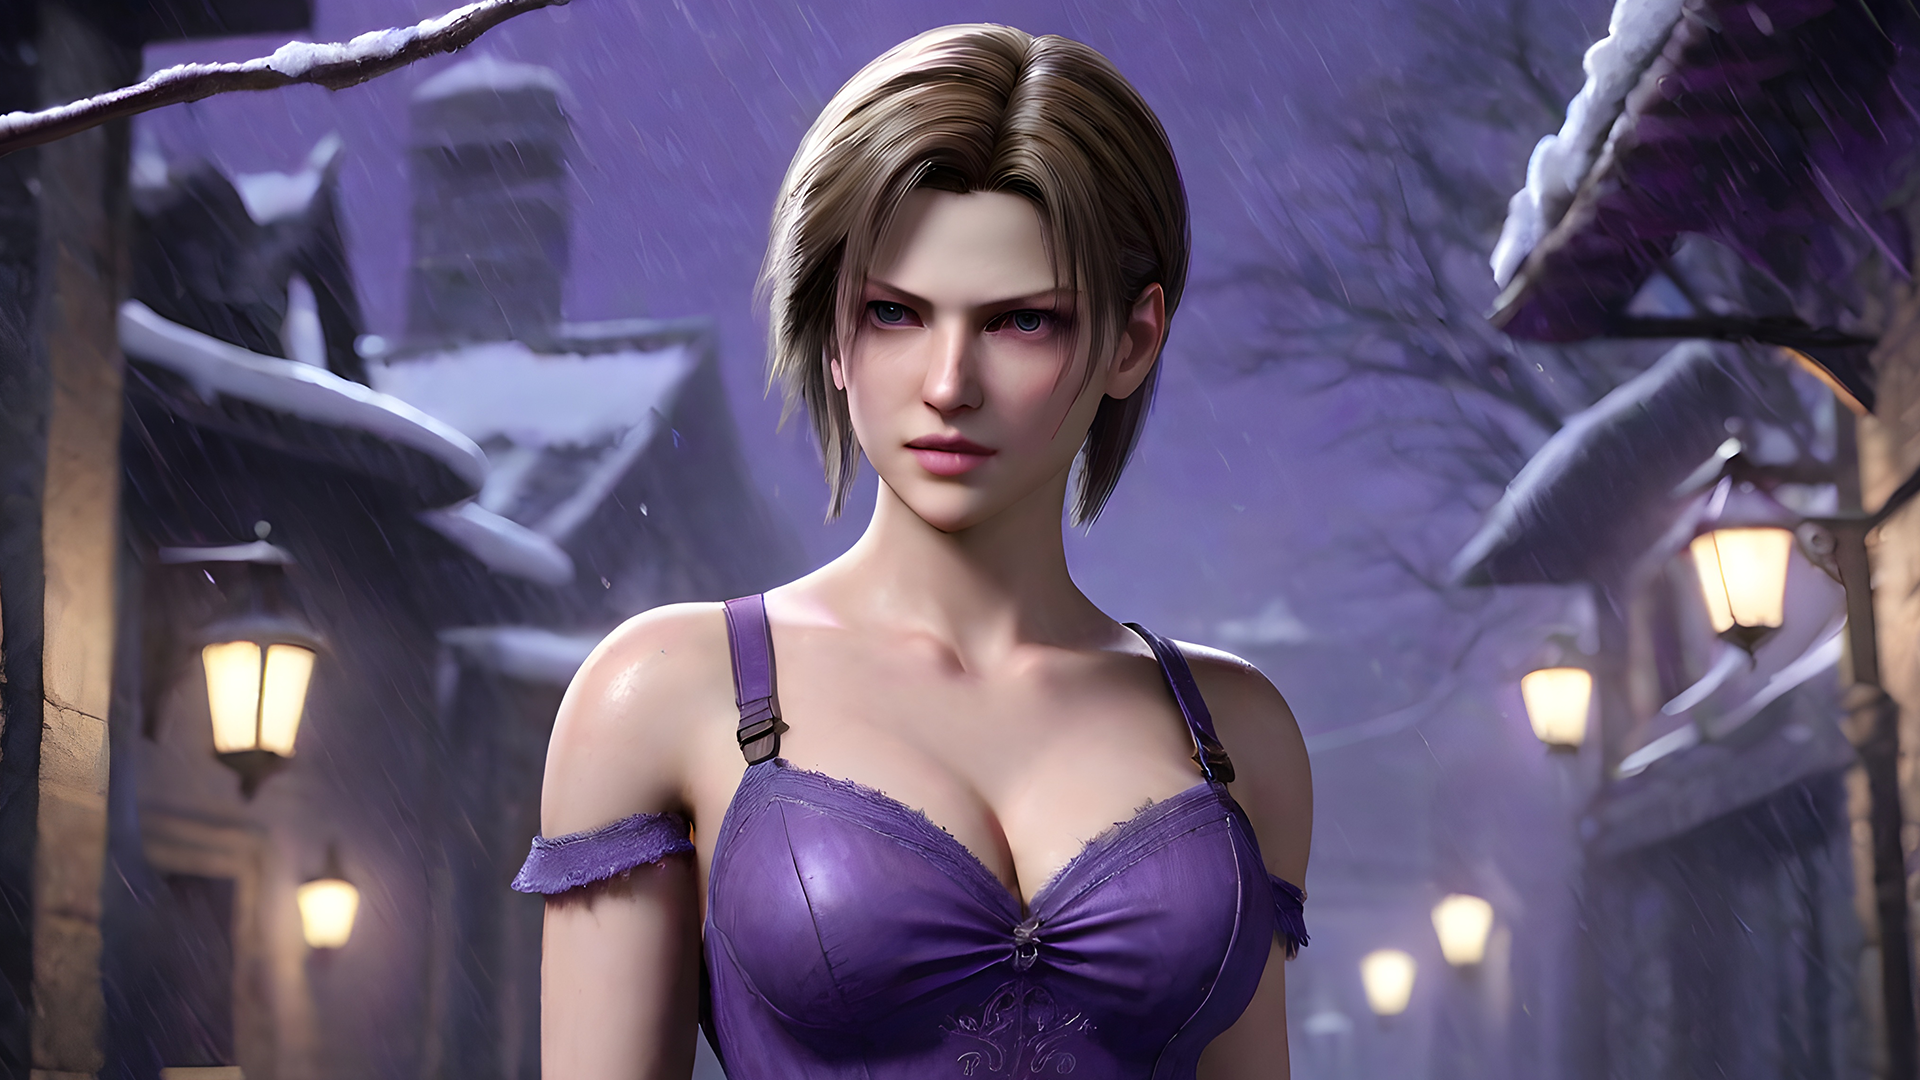 Jill Valentine (Resident Evil) by Dantegonist on DeviantArt